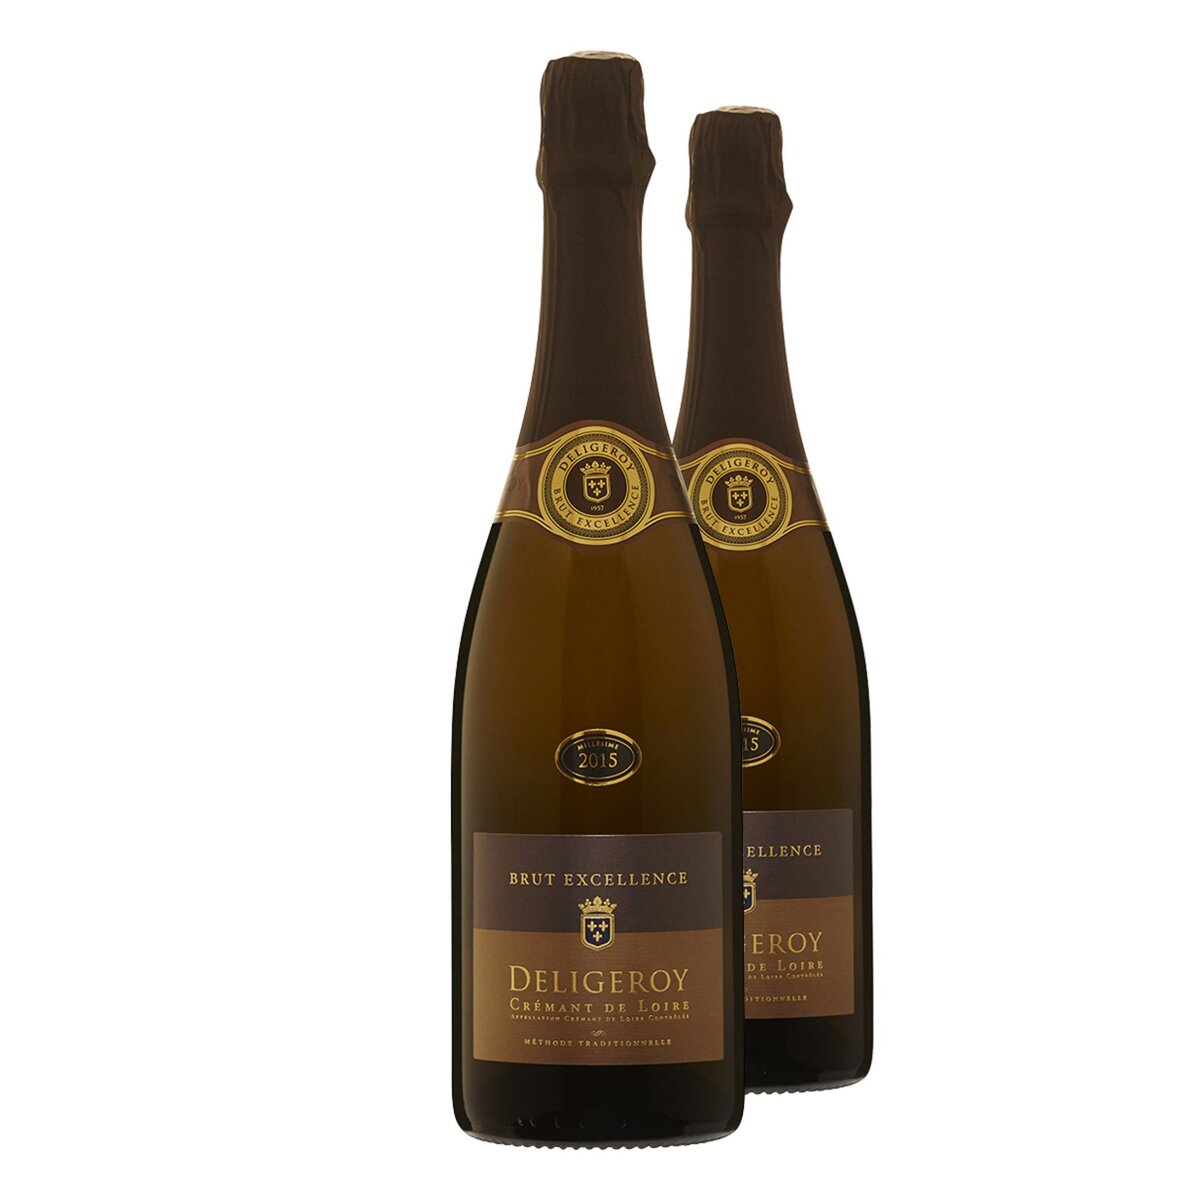  Lot de 2 bouteilles Déligeroy Crémant de Loire Blanc Brut 2015